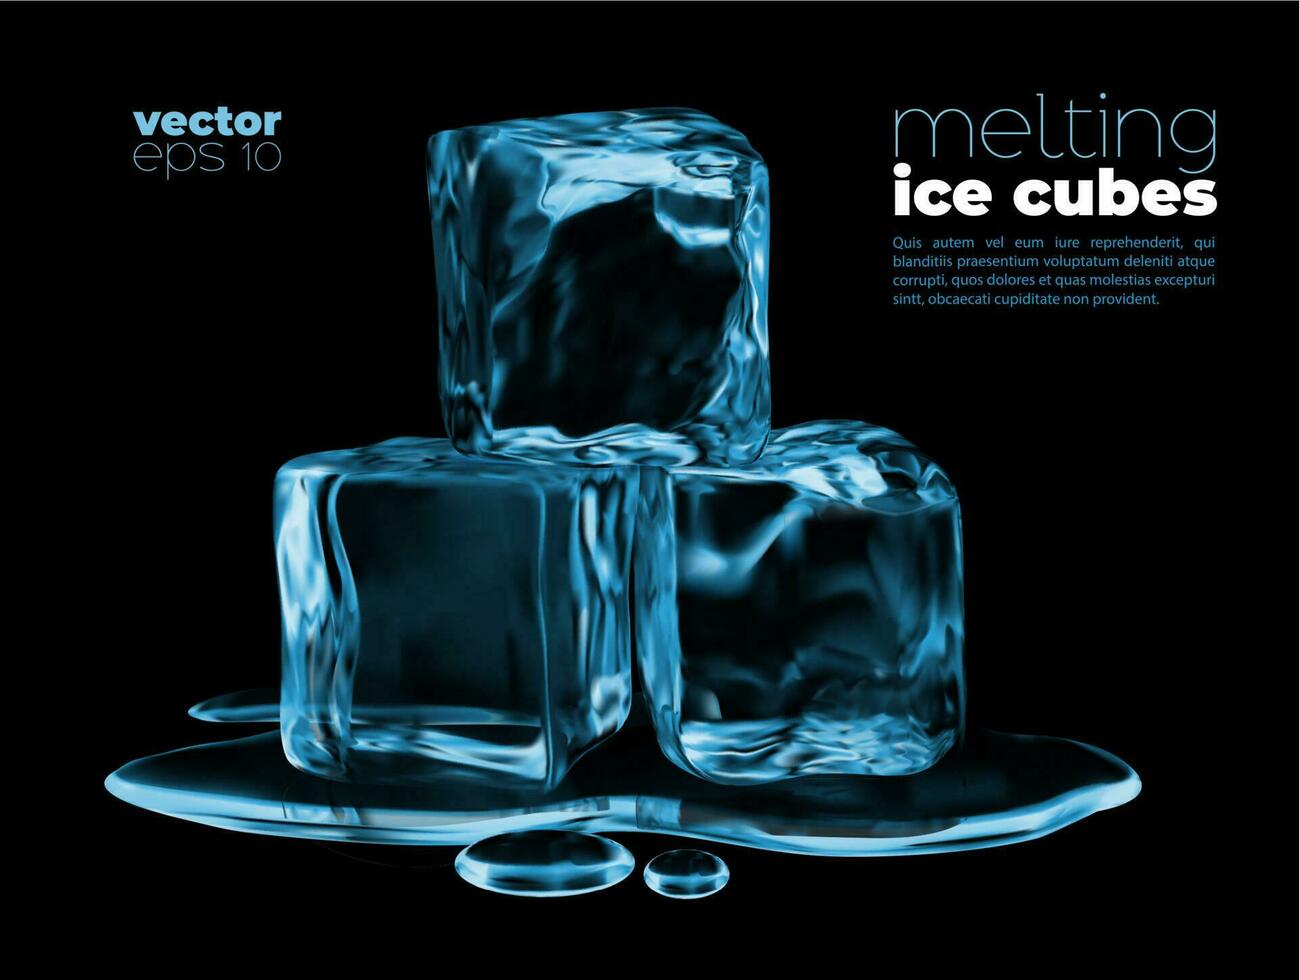 derritiendo hielo cubitos, azul agua charco, congelado bebida vector